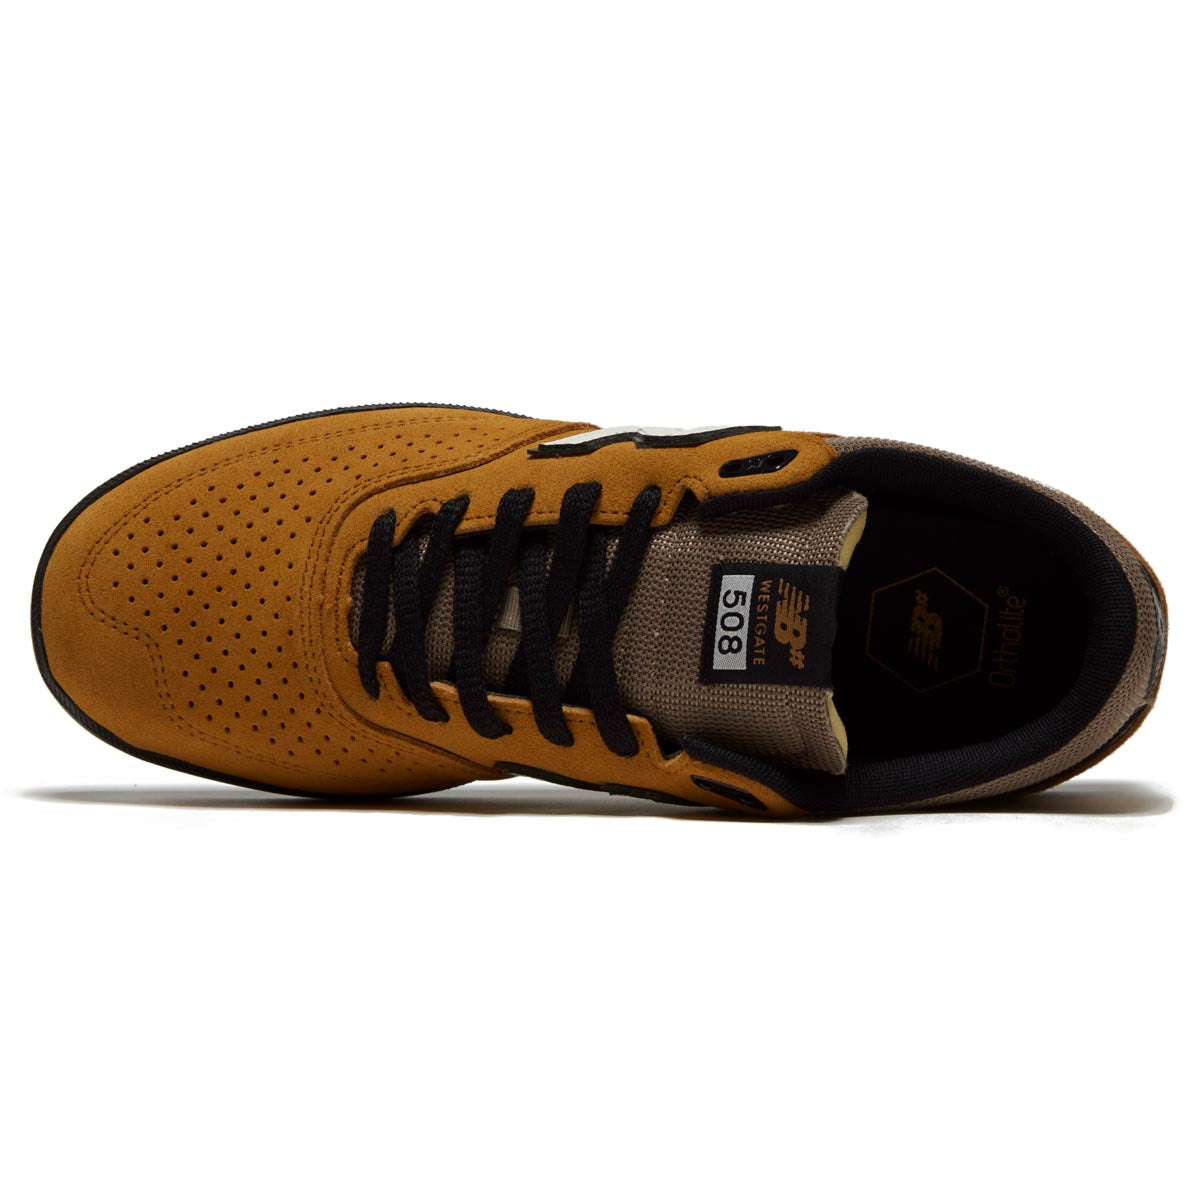 New Balance 508 Westgate Shoes - Caramel/Black image 3